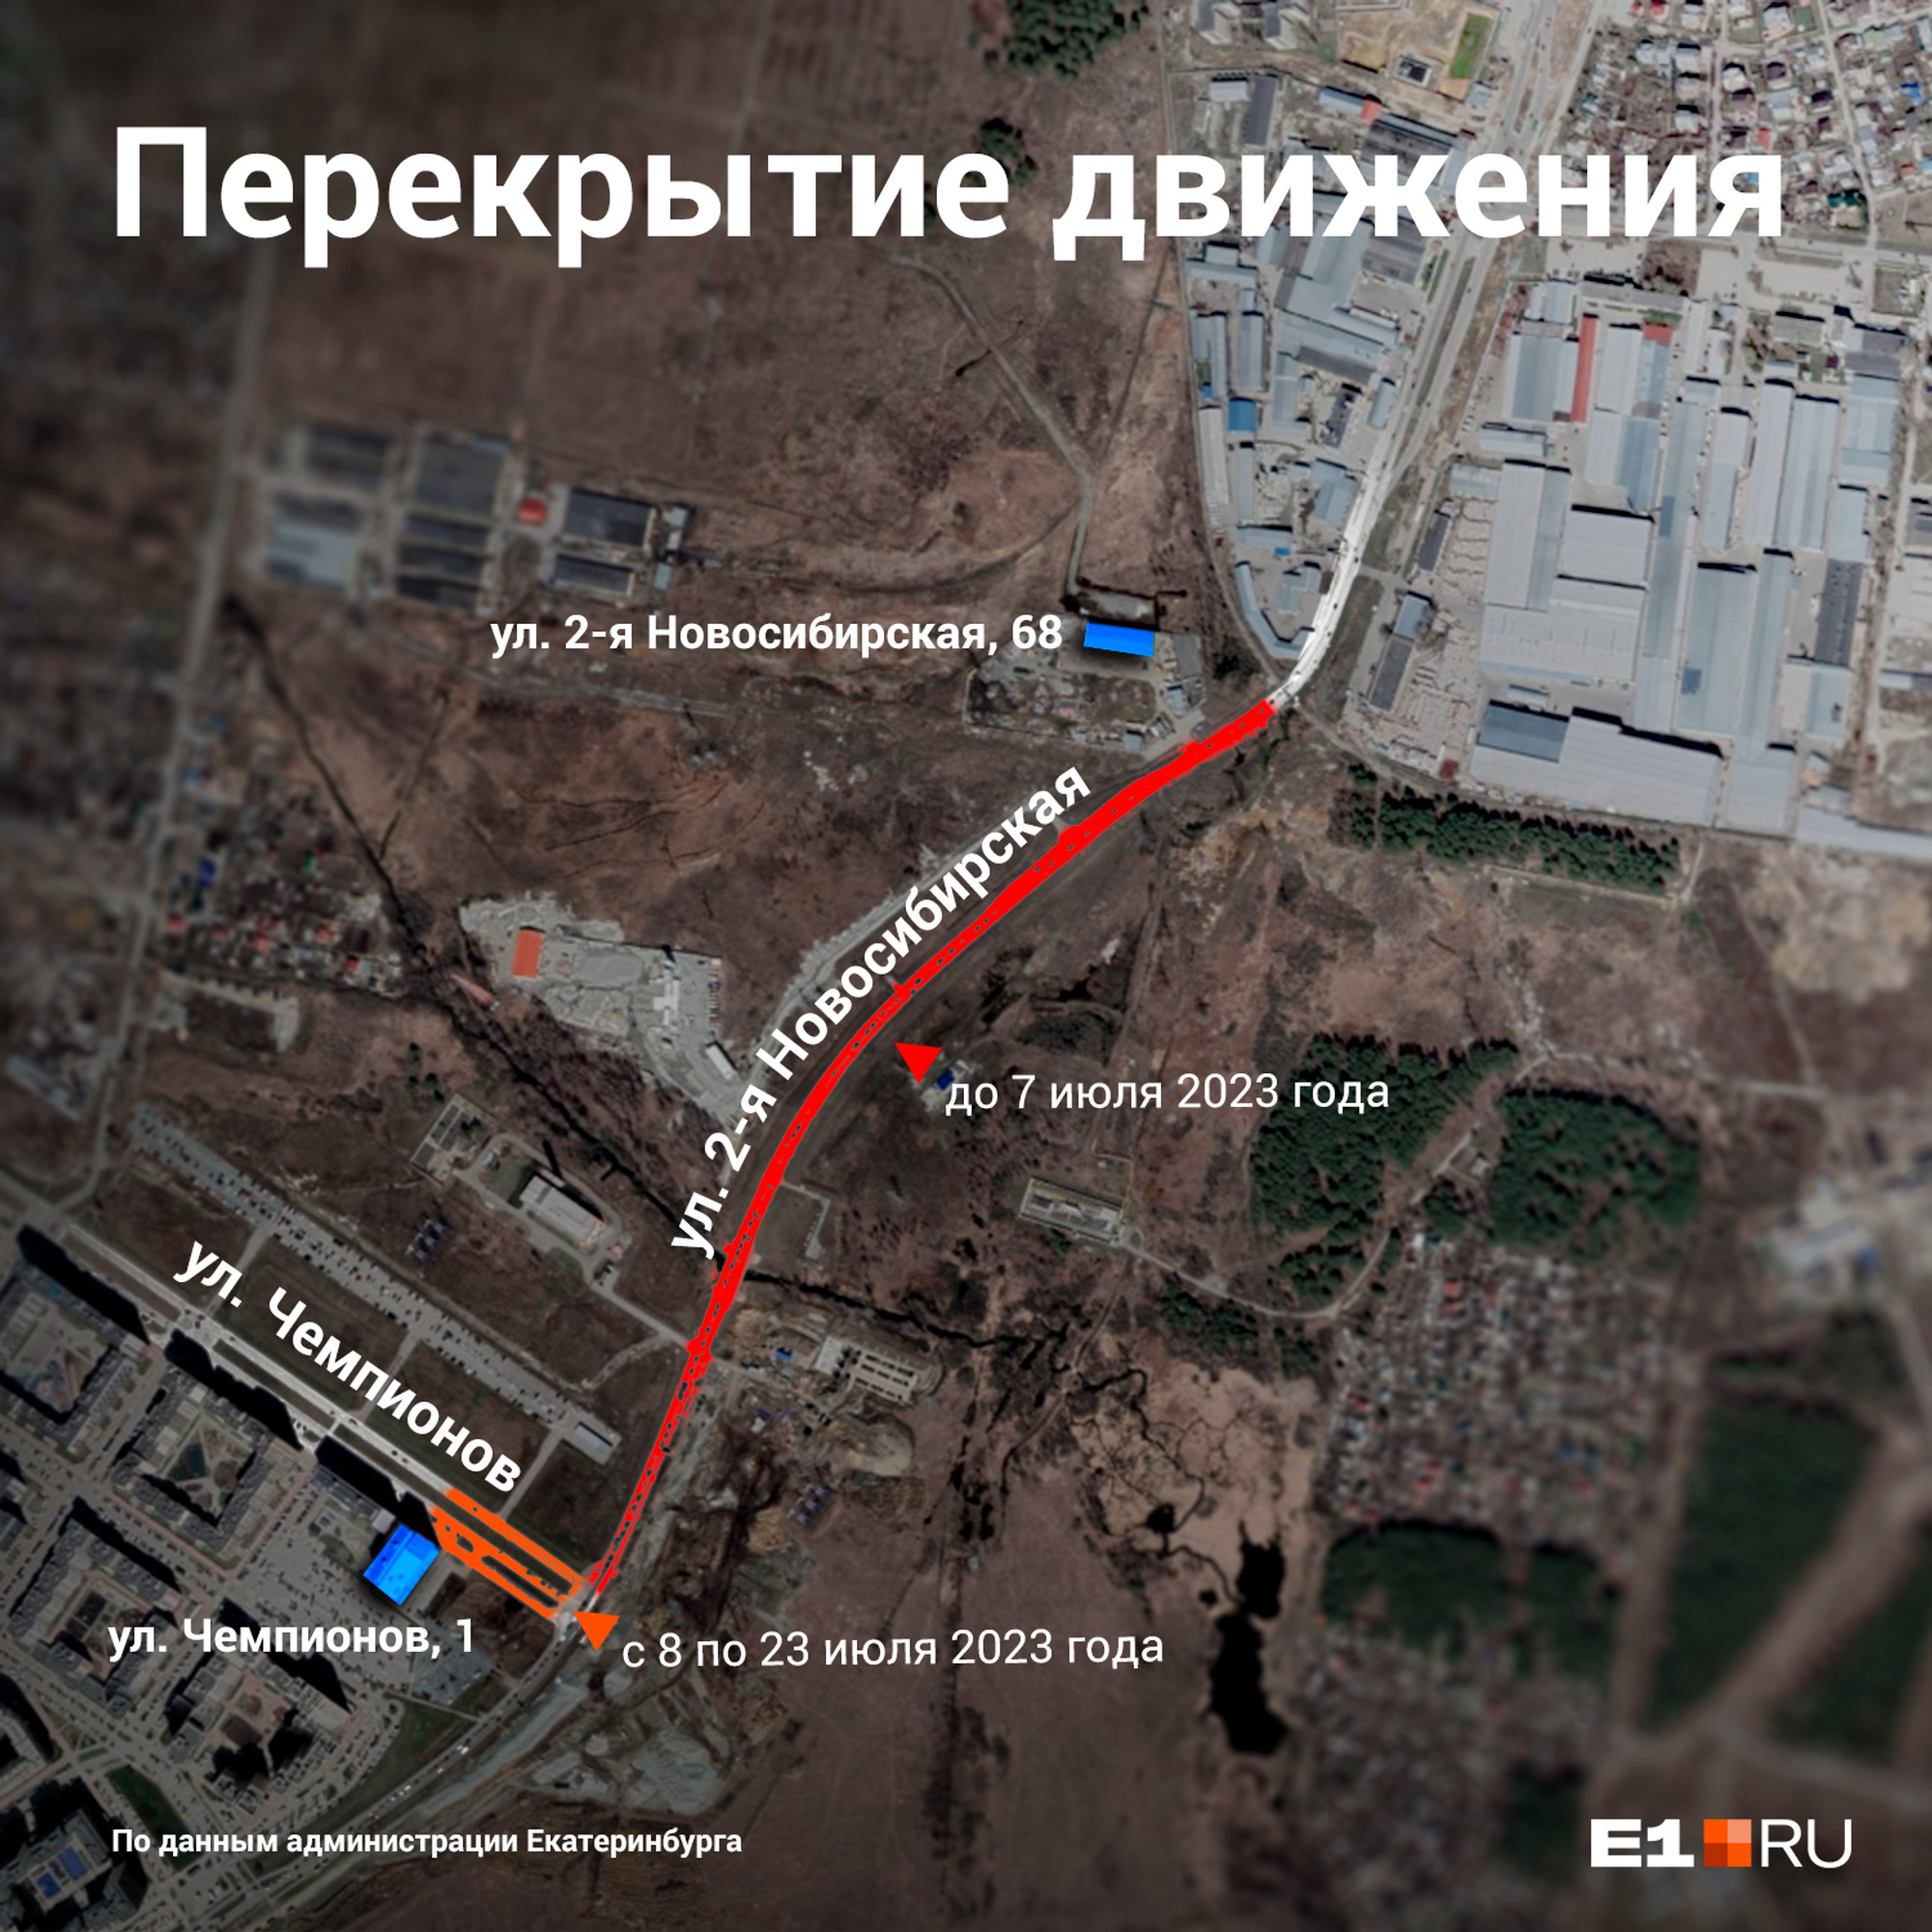 В Екатеринбурге раньше срока открыли улицу, из-за которой жители стояли в адских пробках